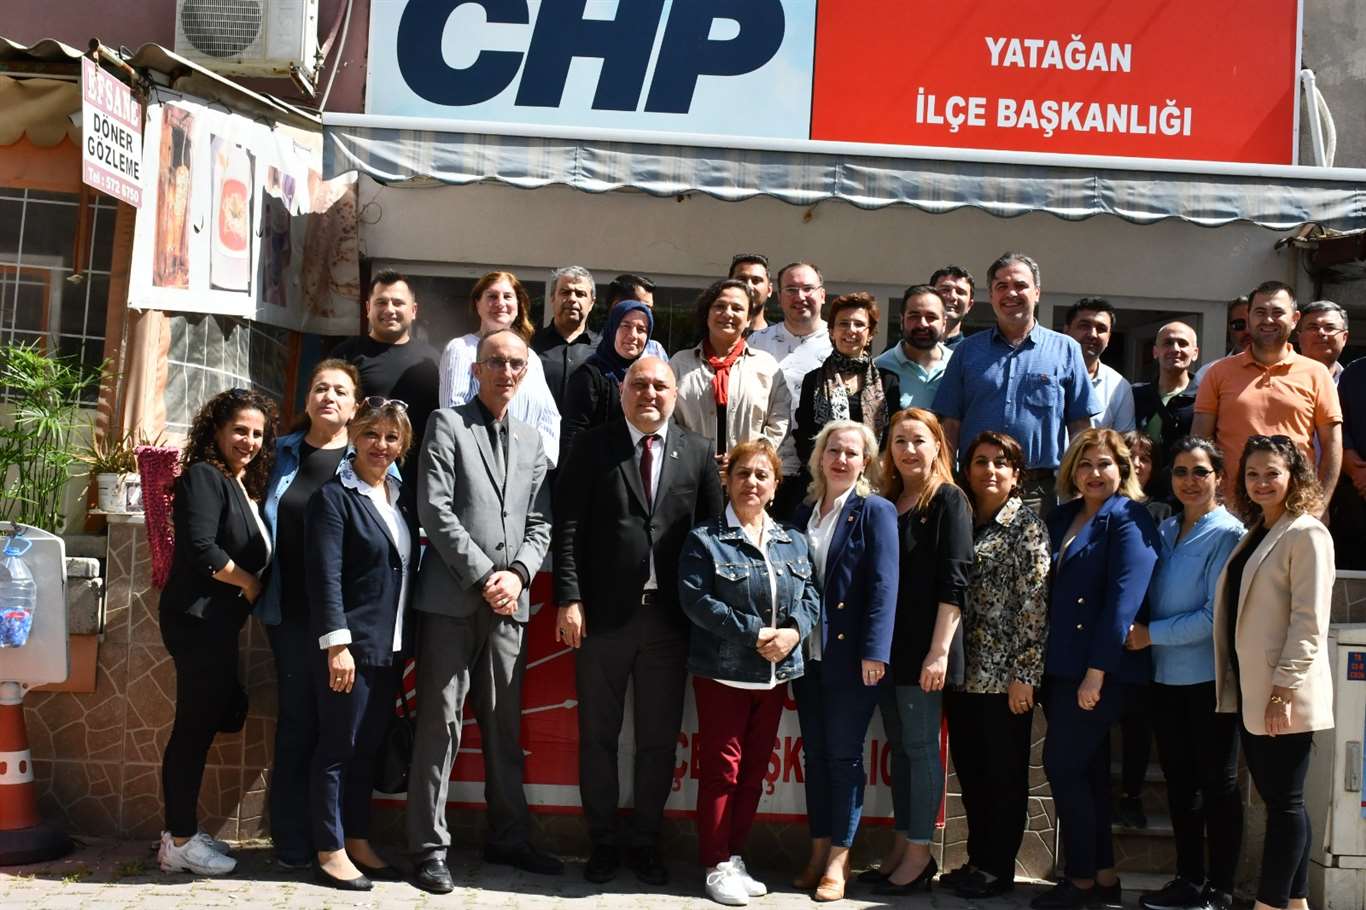    Yerel seçimin ardından CHP'ye döndüler haberi